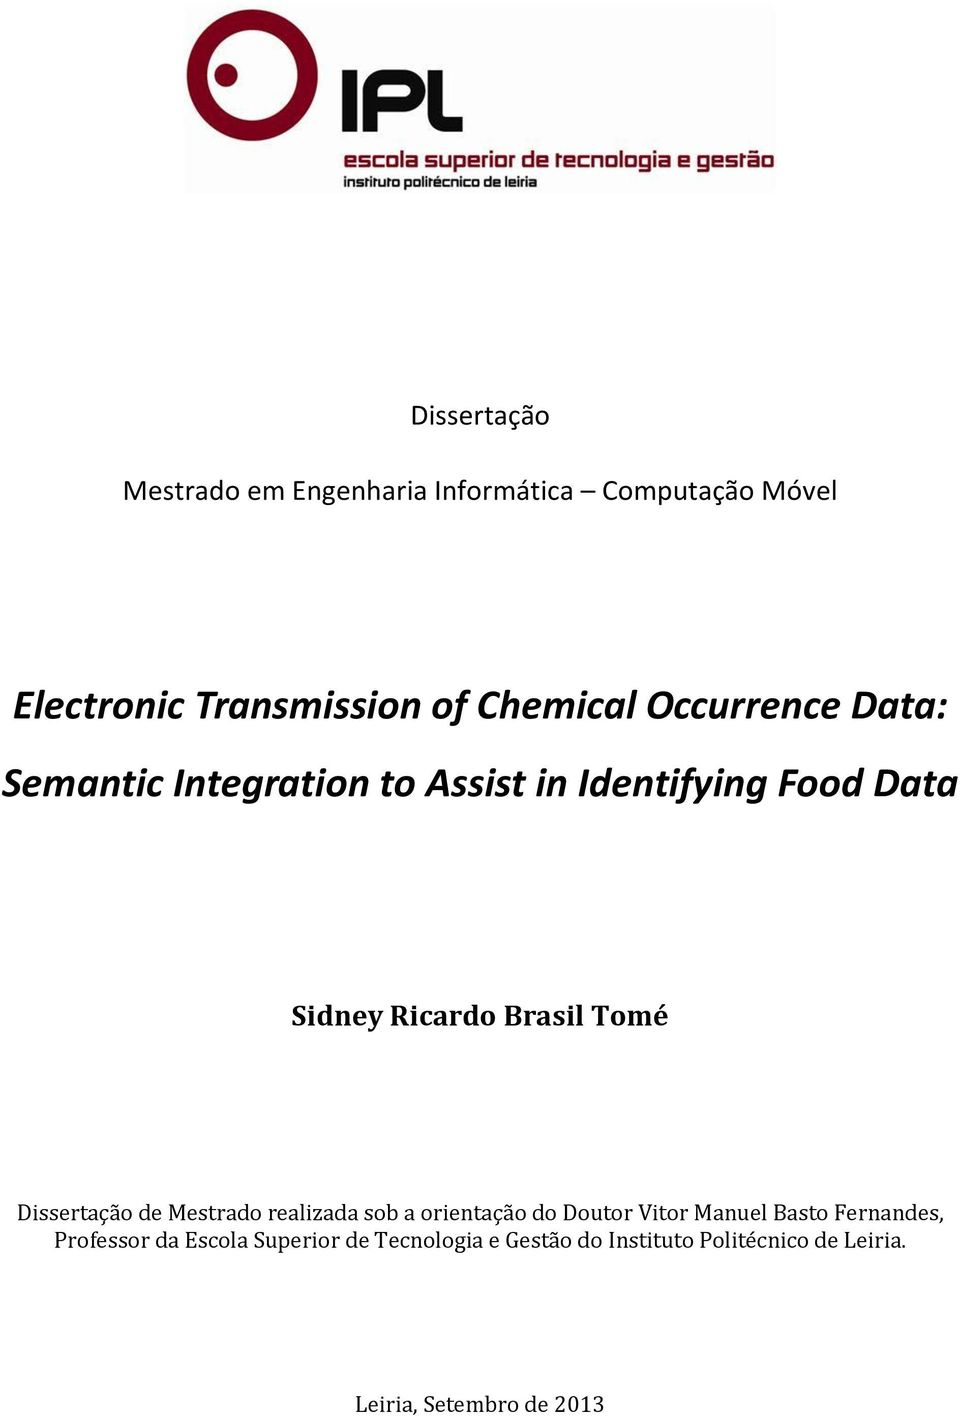 Dissertação de Mestrado realizada sob a orientação do Doutor Vitor Manuel Basto Fernandes, Professor